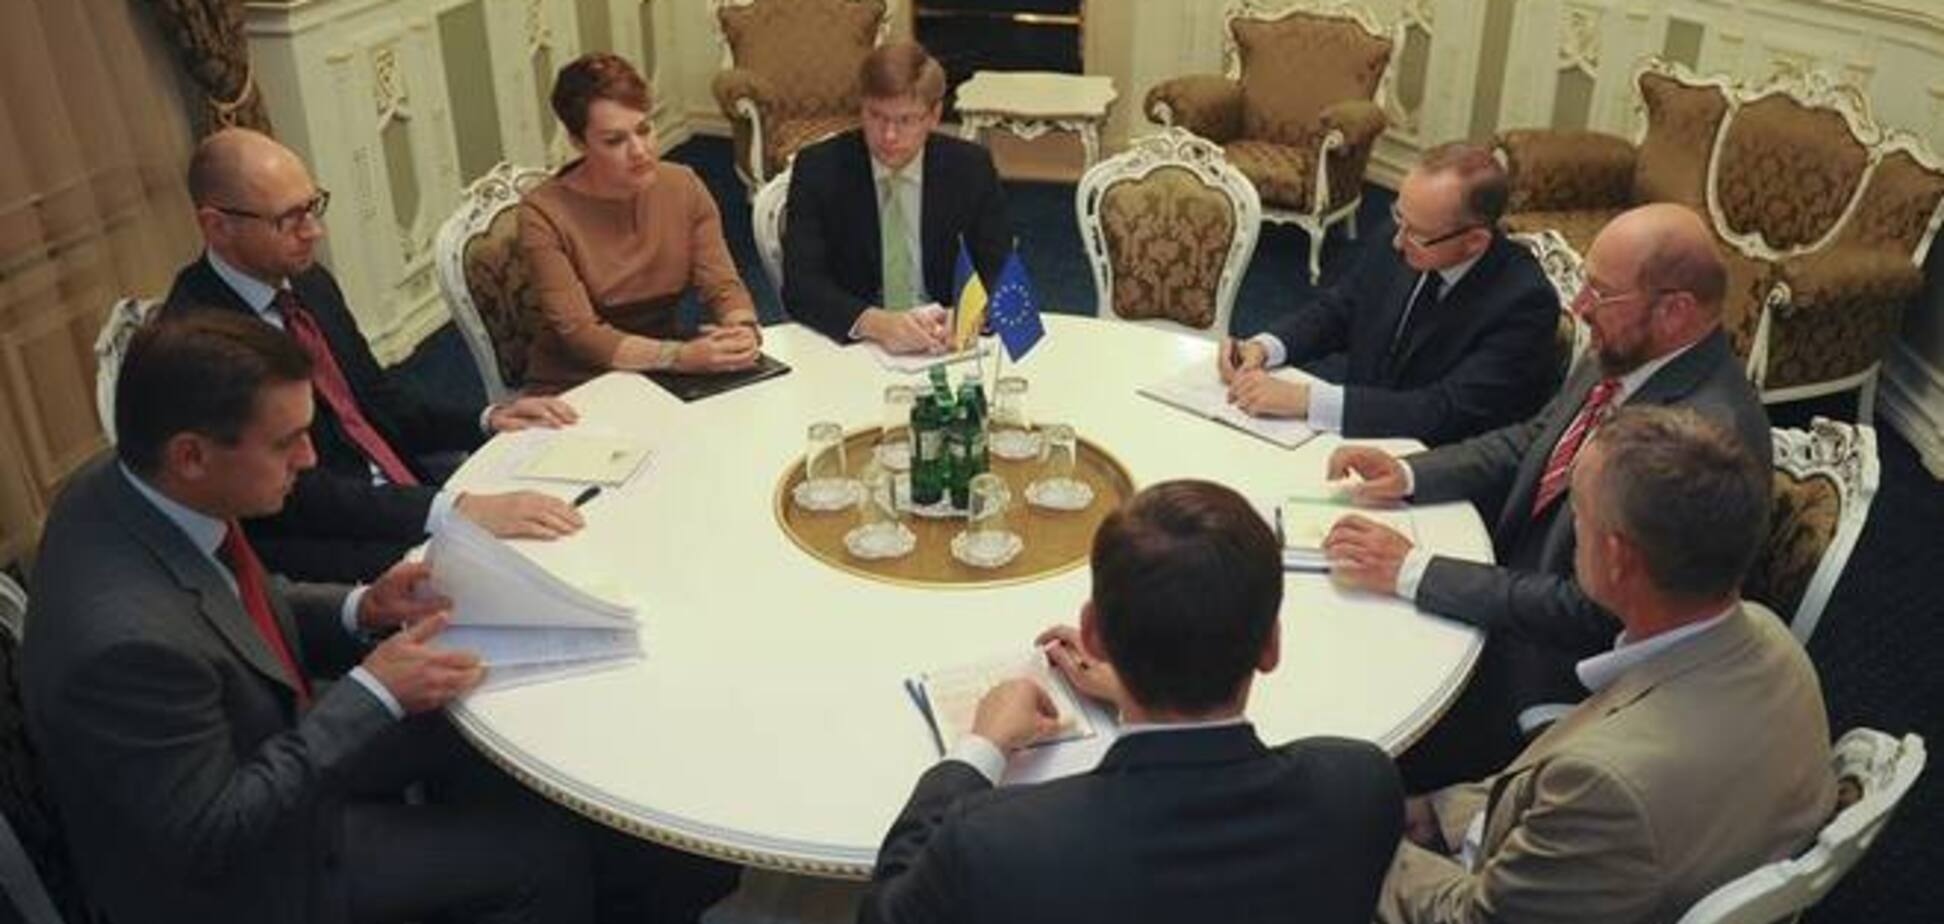 Ратификация Соглашение об ассоциации между Украиной и ЕС состоится синхронно по видеомосту 16 сентября